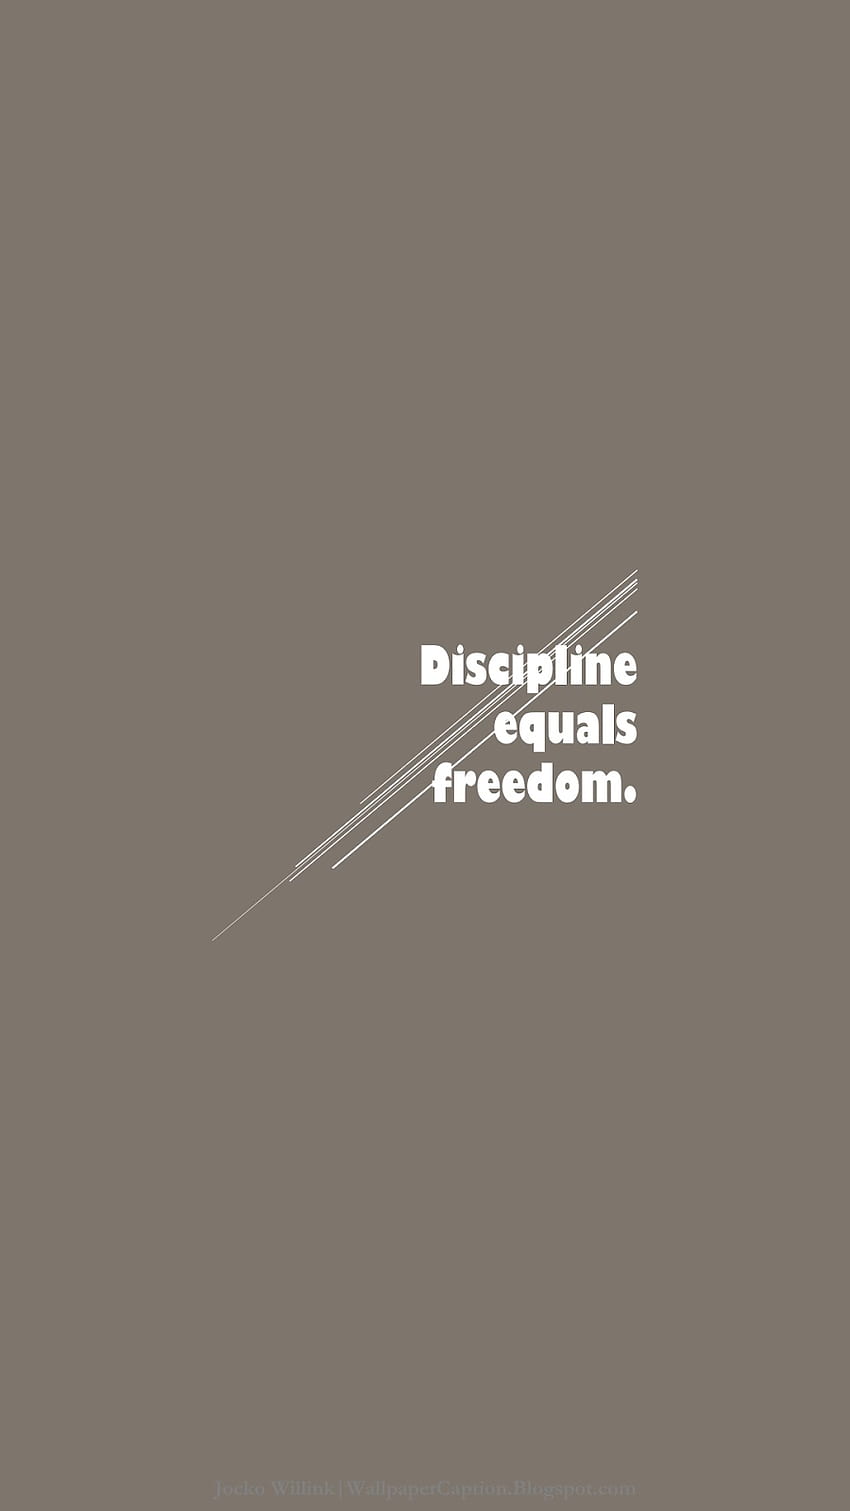 Top 40 Discipline Quotes (2023 Update) - Quotefancy